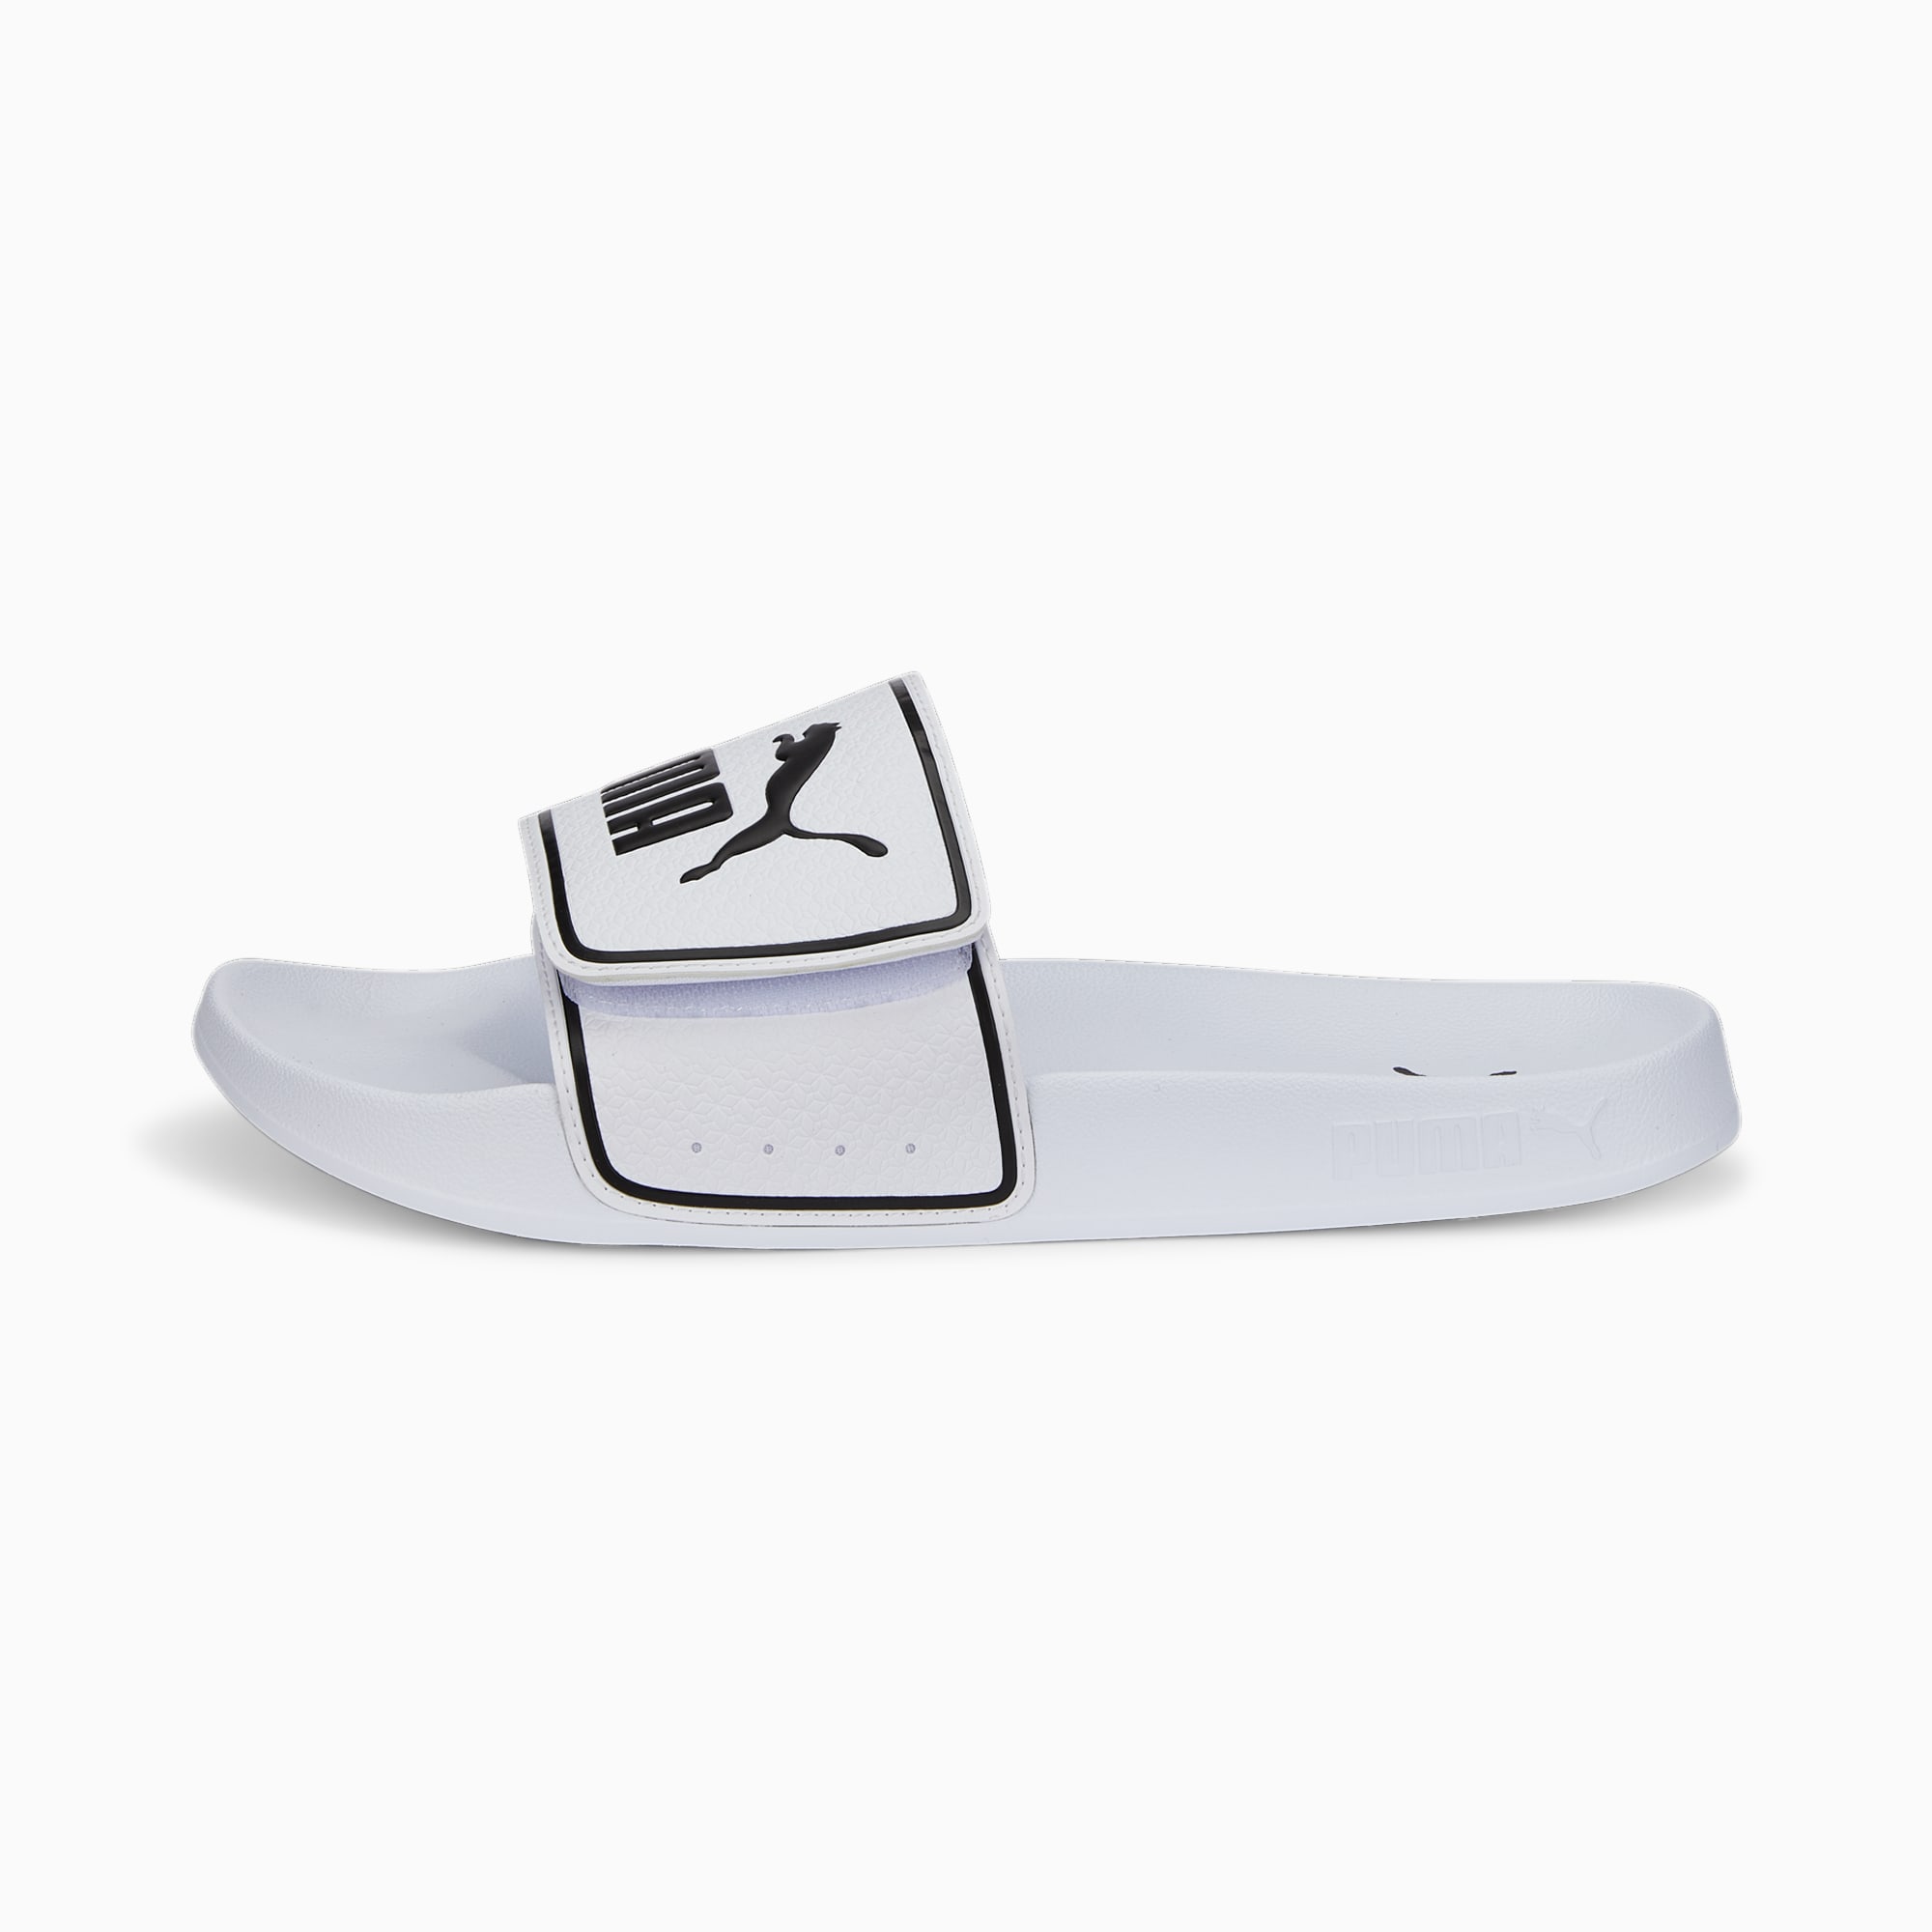 PUMA Leadcat 2.0 V Slides, Weiß/Schwarz, Größe: 35.5, Schuhe